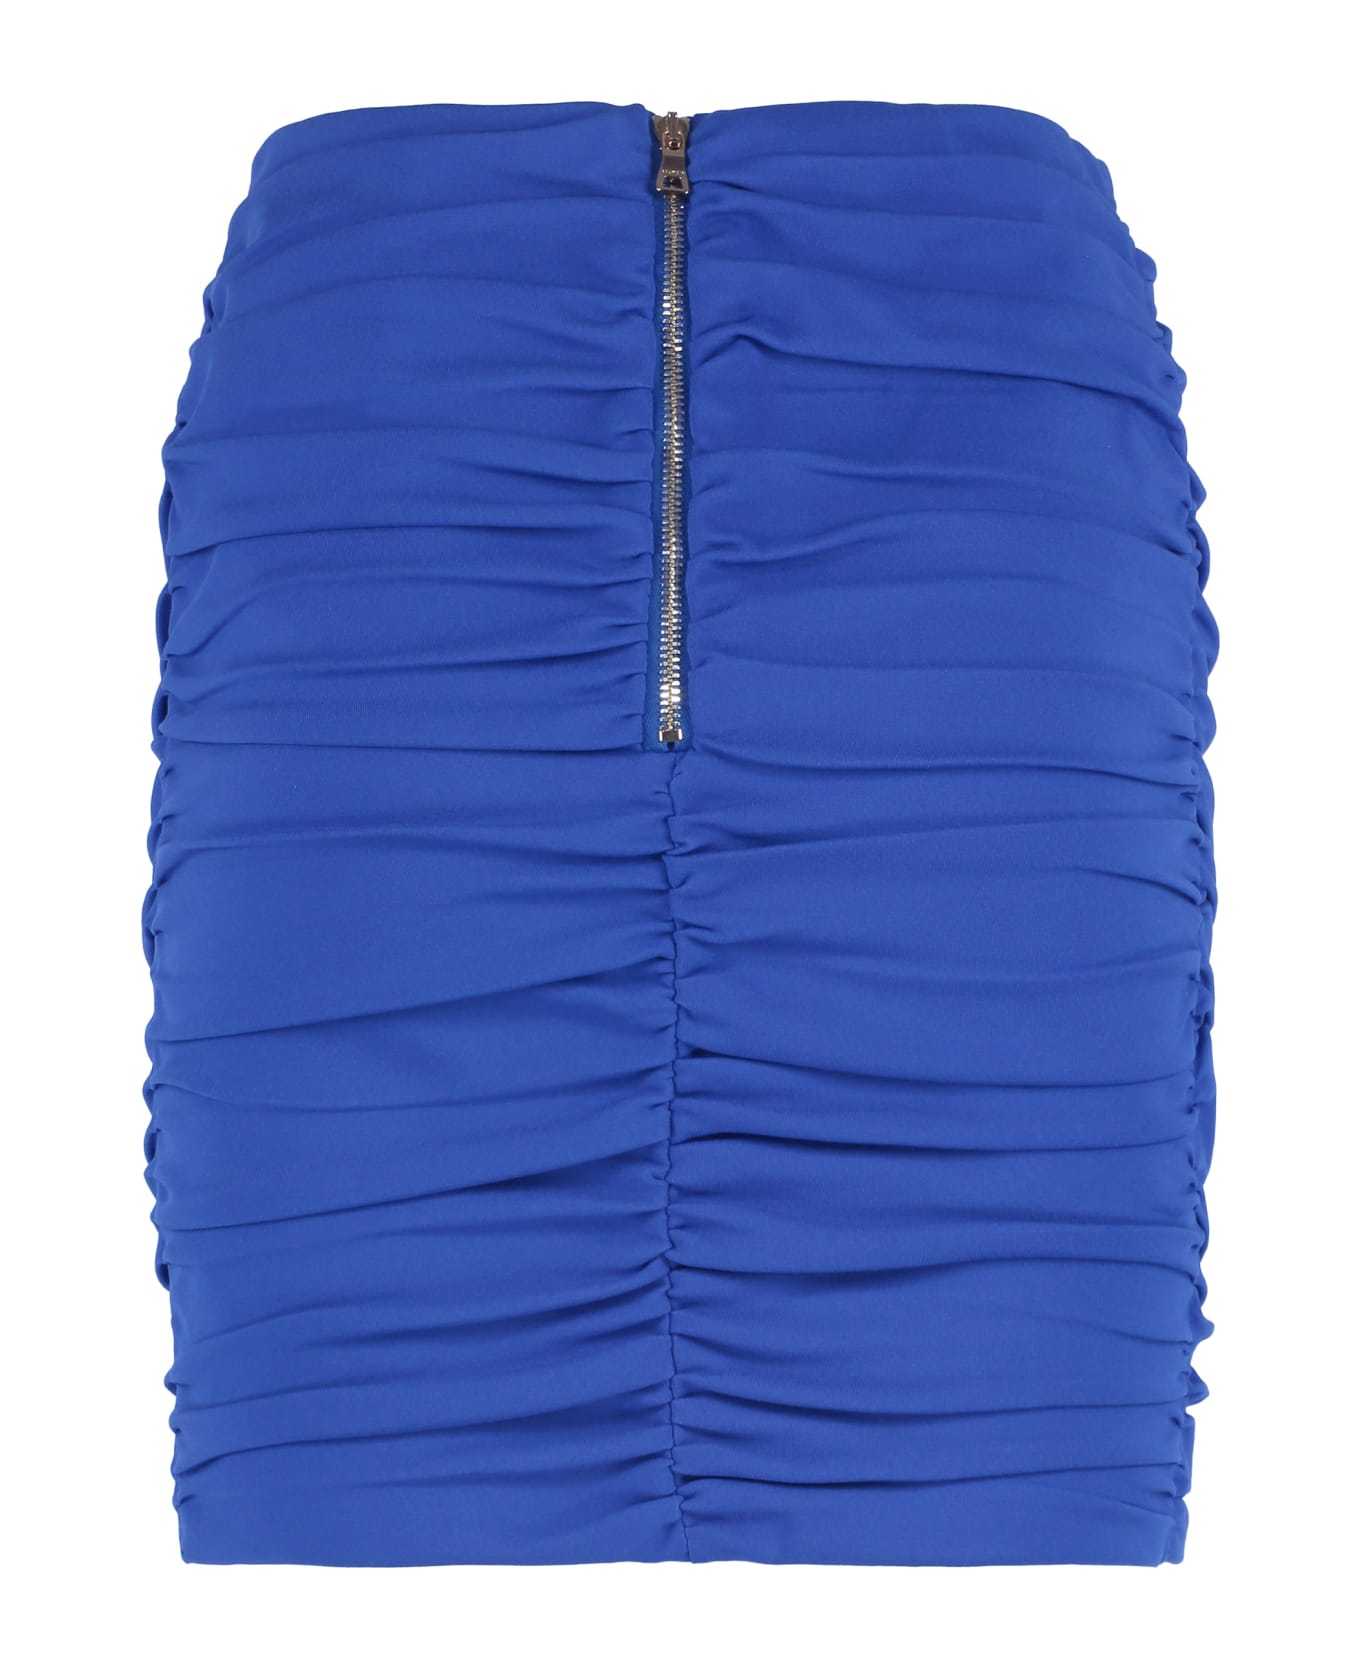 Balmain Draped Skirt - Blue スカート